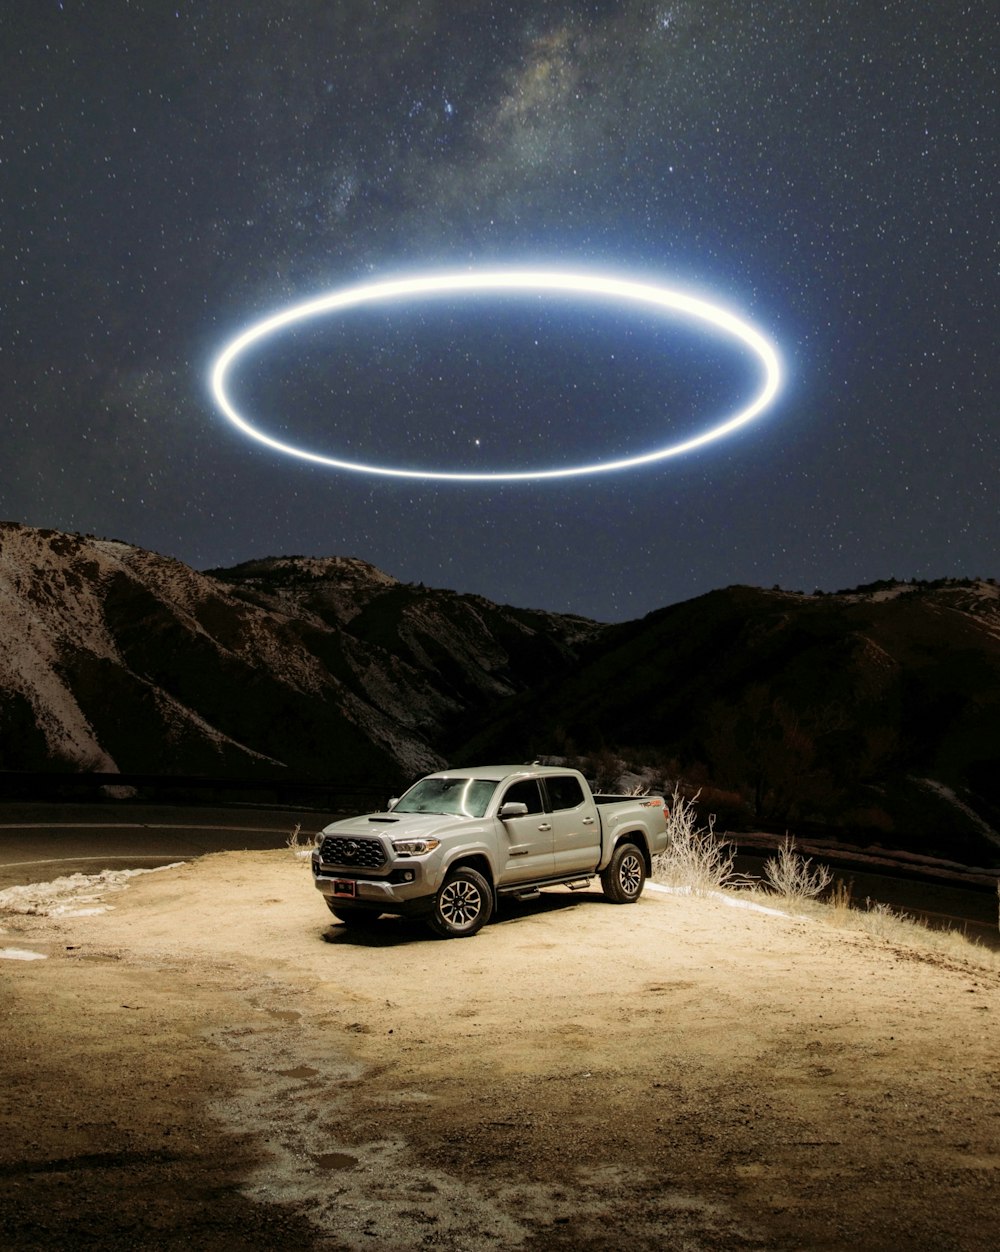 별이 빛나는 밤 아래 갈색 모래 위에 흰색 SUV